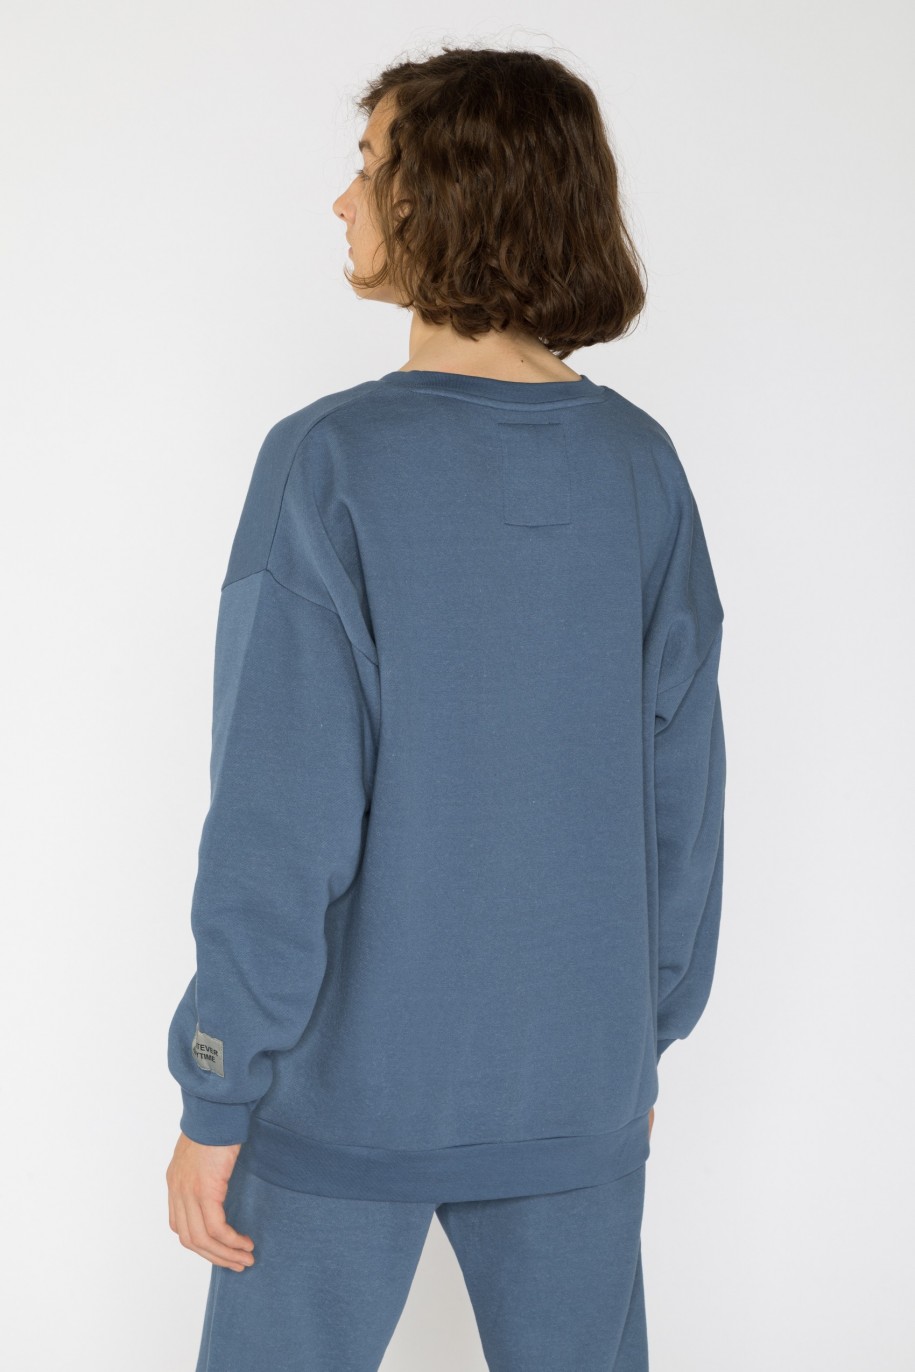 Niebieska gładka bluza dla chłopaka - 31620